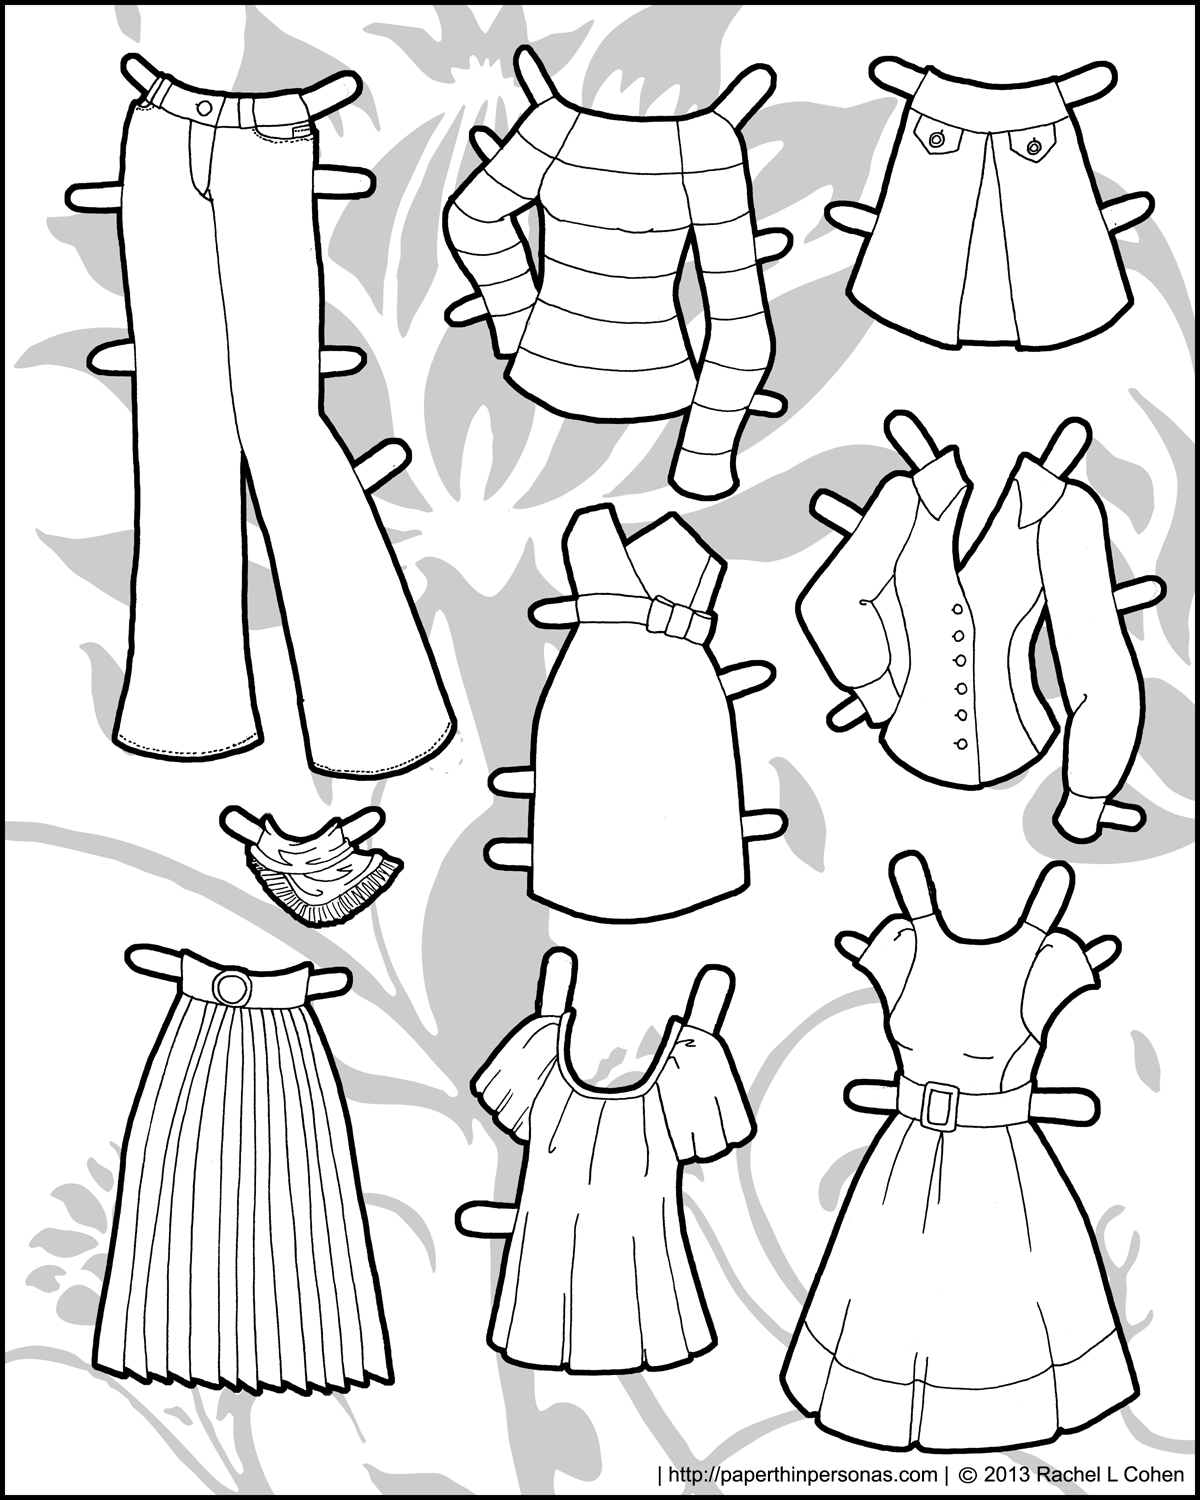 Бумажные куклы с одеждой